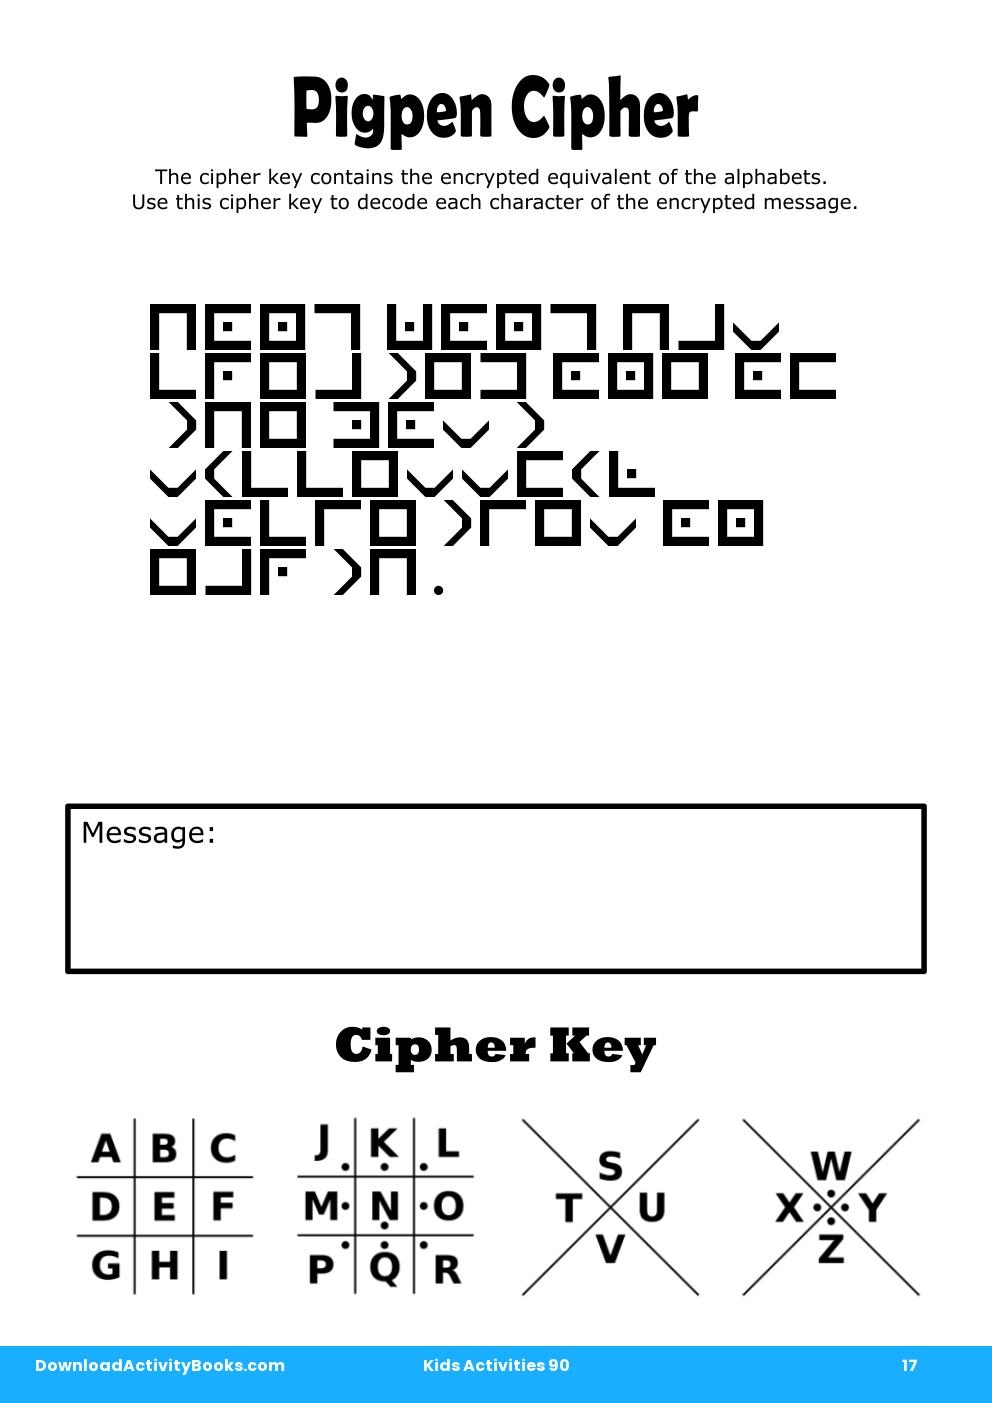 Pigpen Cipher in Kids Activities 90